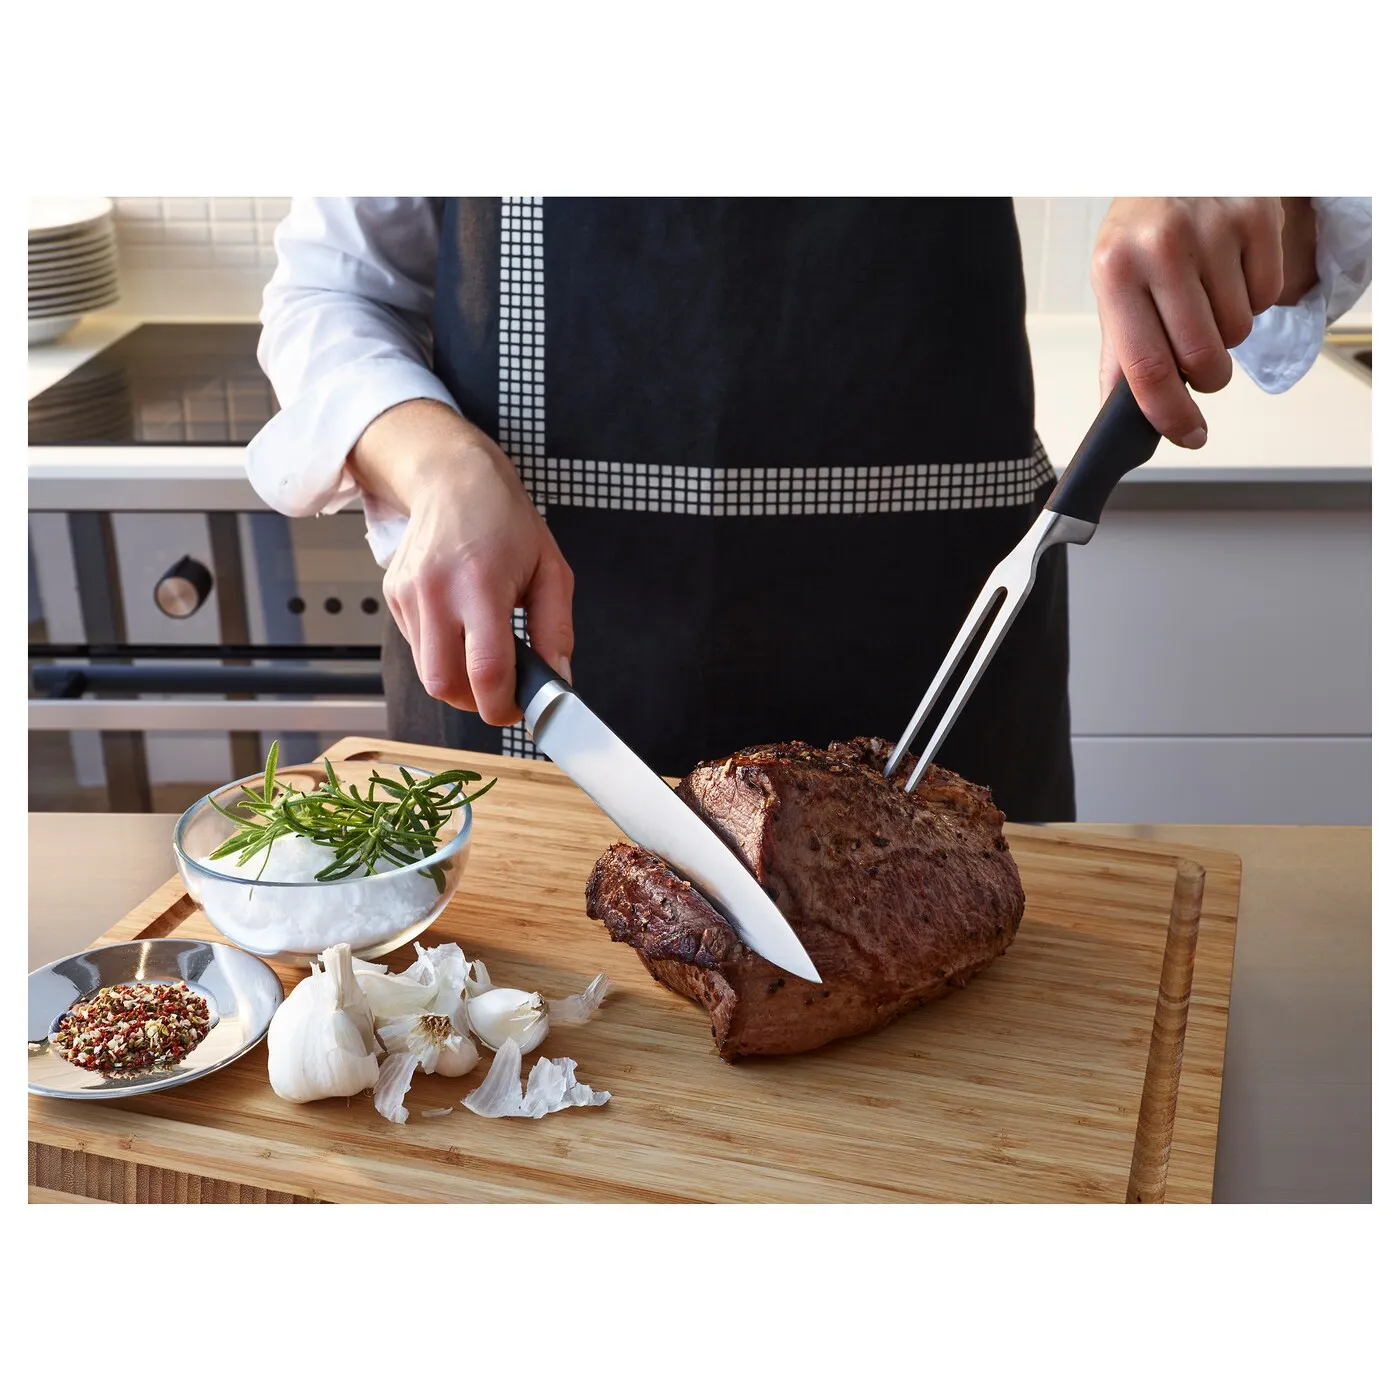 [ส่งฟรี ] ส้อมจิ้มเนื้อ/มีดแล่เนื้อ, ดำ Carving fork and carving knife, black knife kitchen Kitckitchen knife kitchen knife set มีดทำครัว มีดปังตอ มีดสับ ซอย หั่น  ชุดอุปกรณ์ครัว แข็งแรงทนทาน ไม่เป็นสนิม